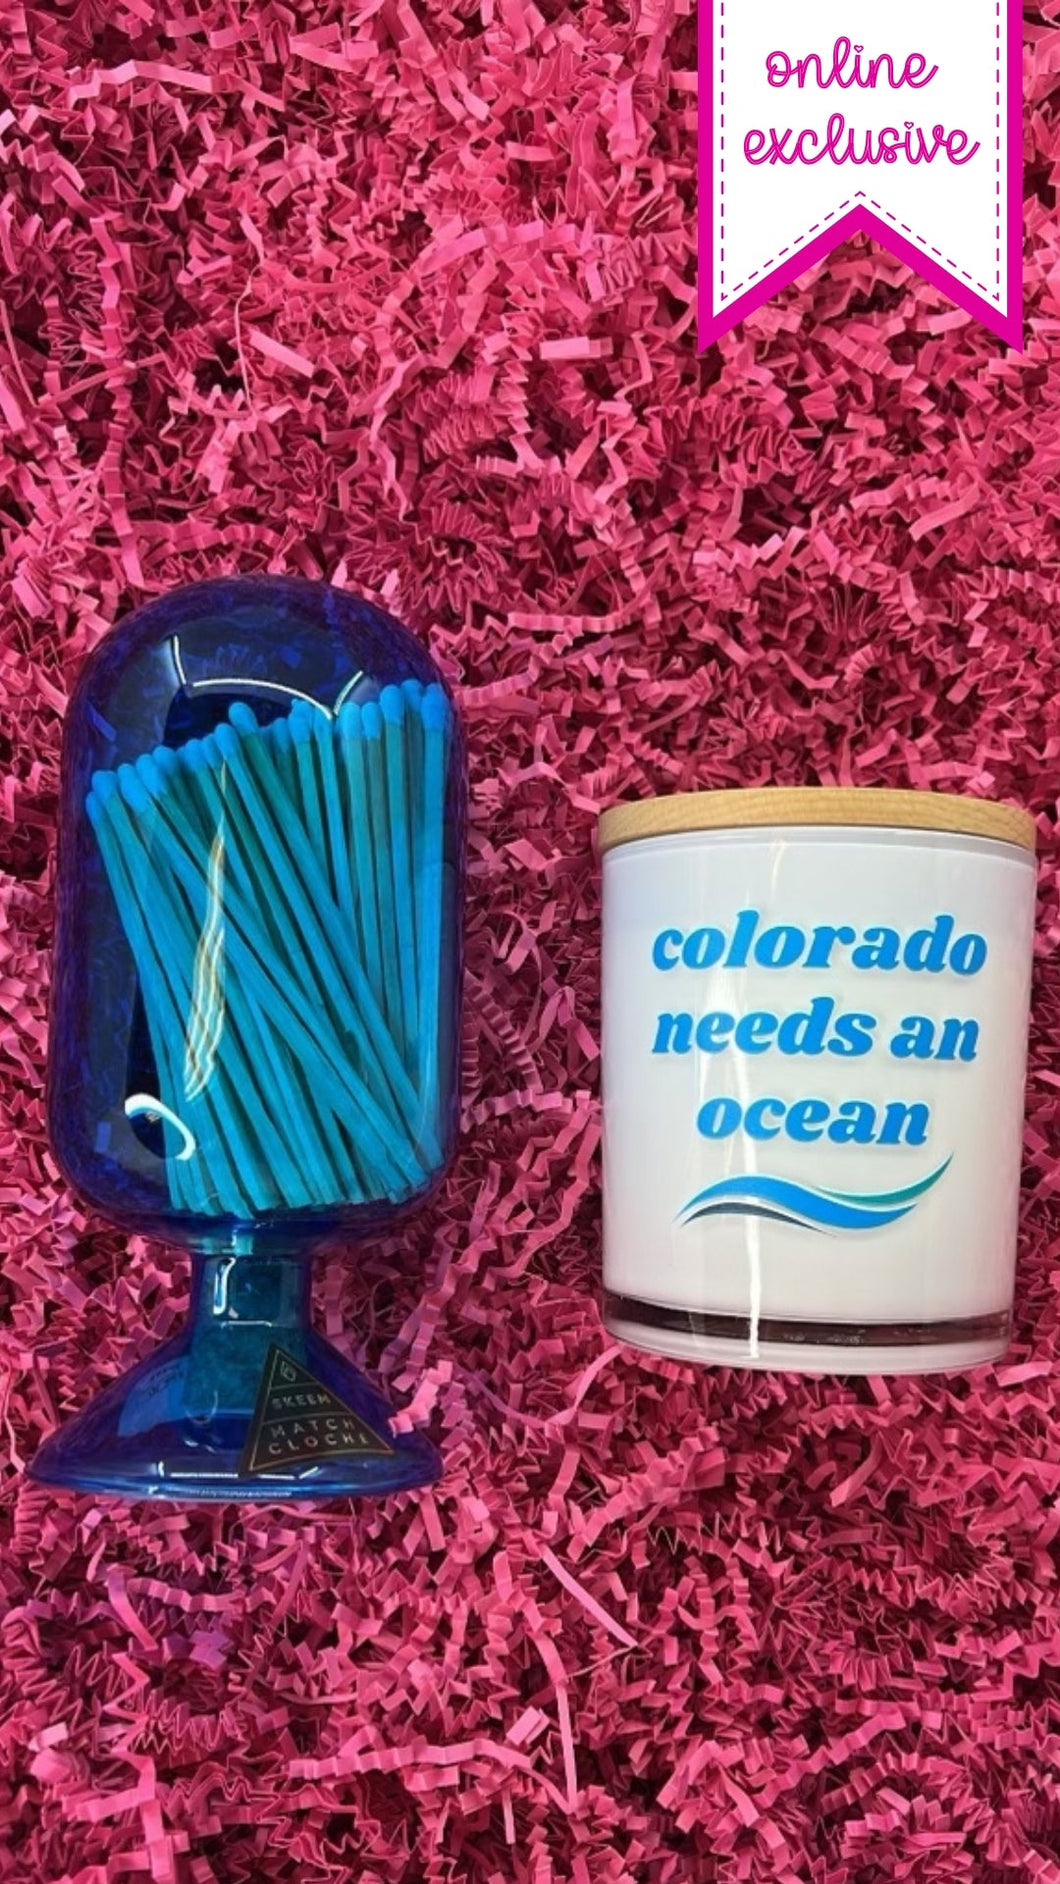 Colorado Needs an Ocean